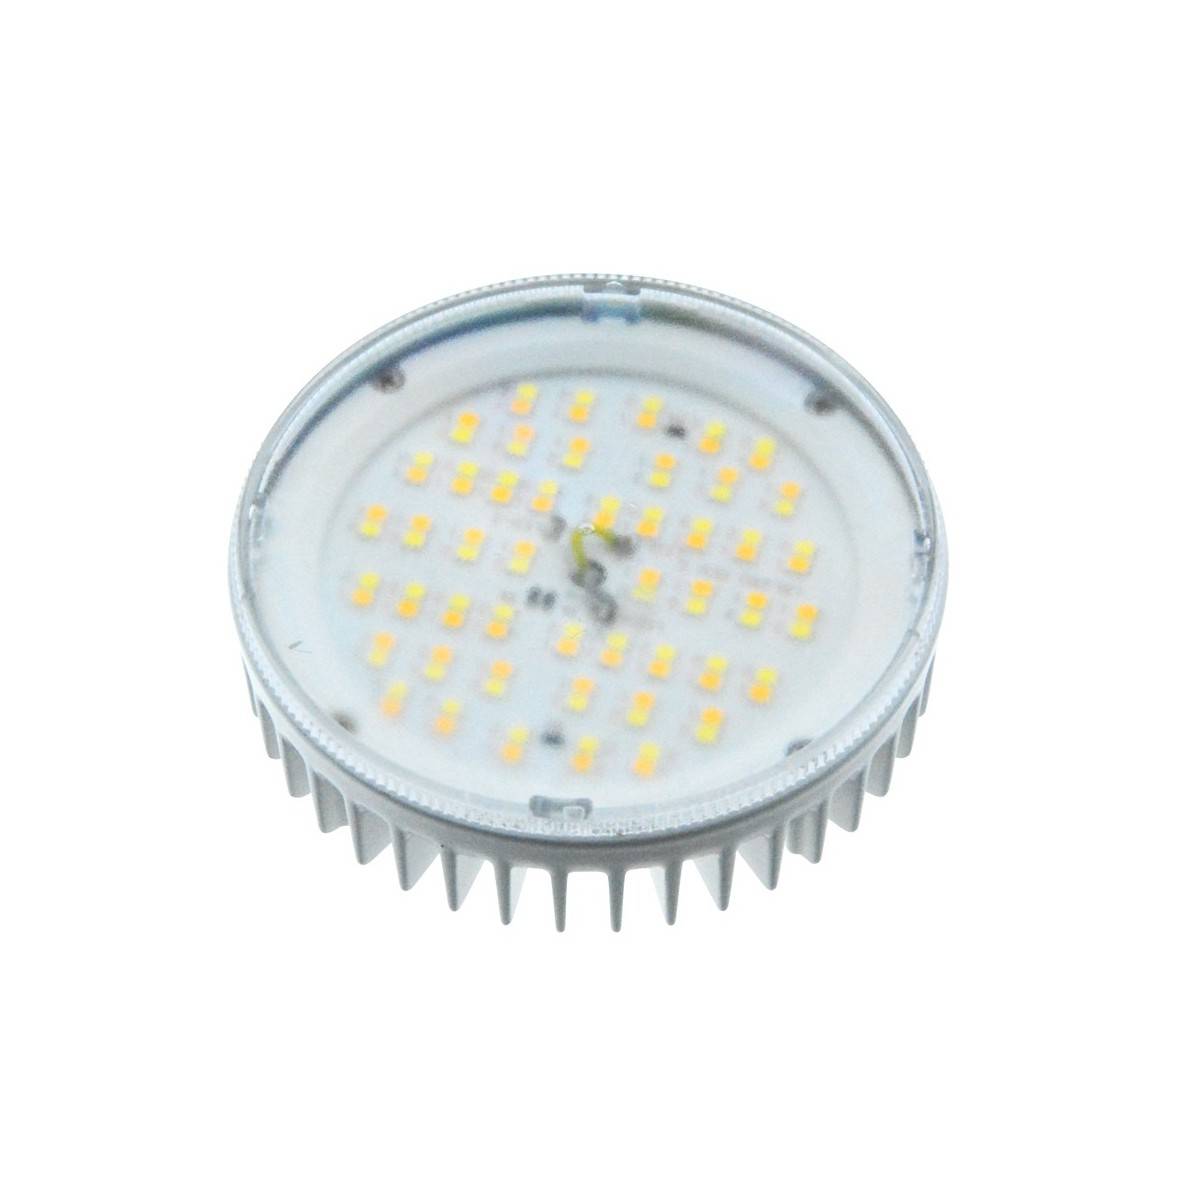 LED Bulb GX53 CCT 10W 1200lm